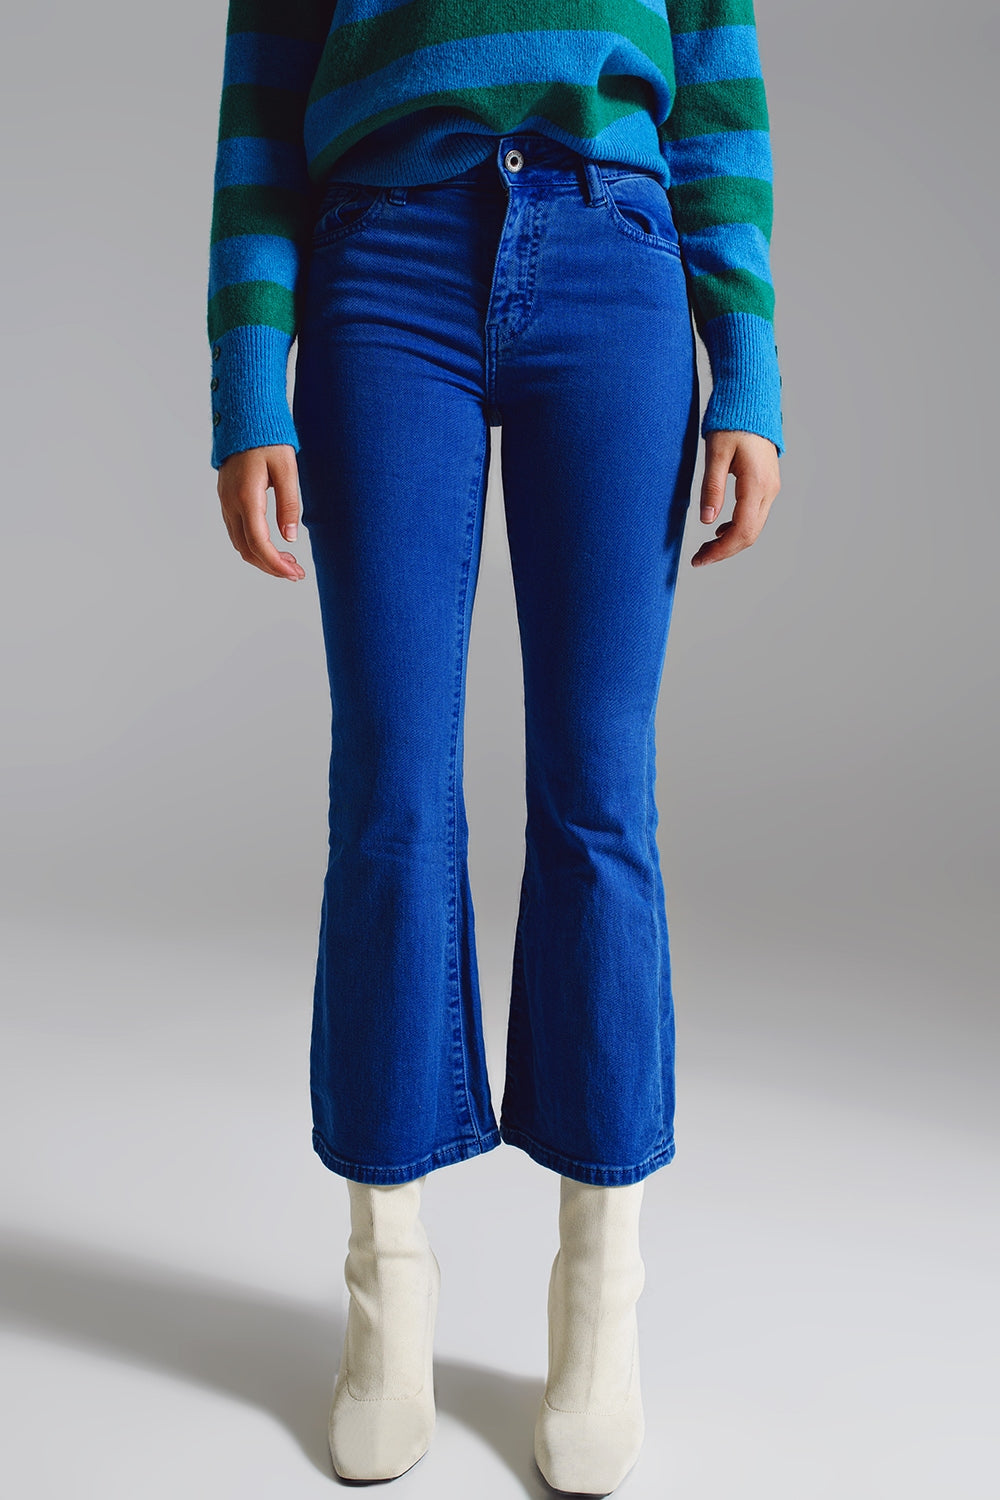 Q2 High waist flair jeans in blue